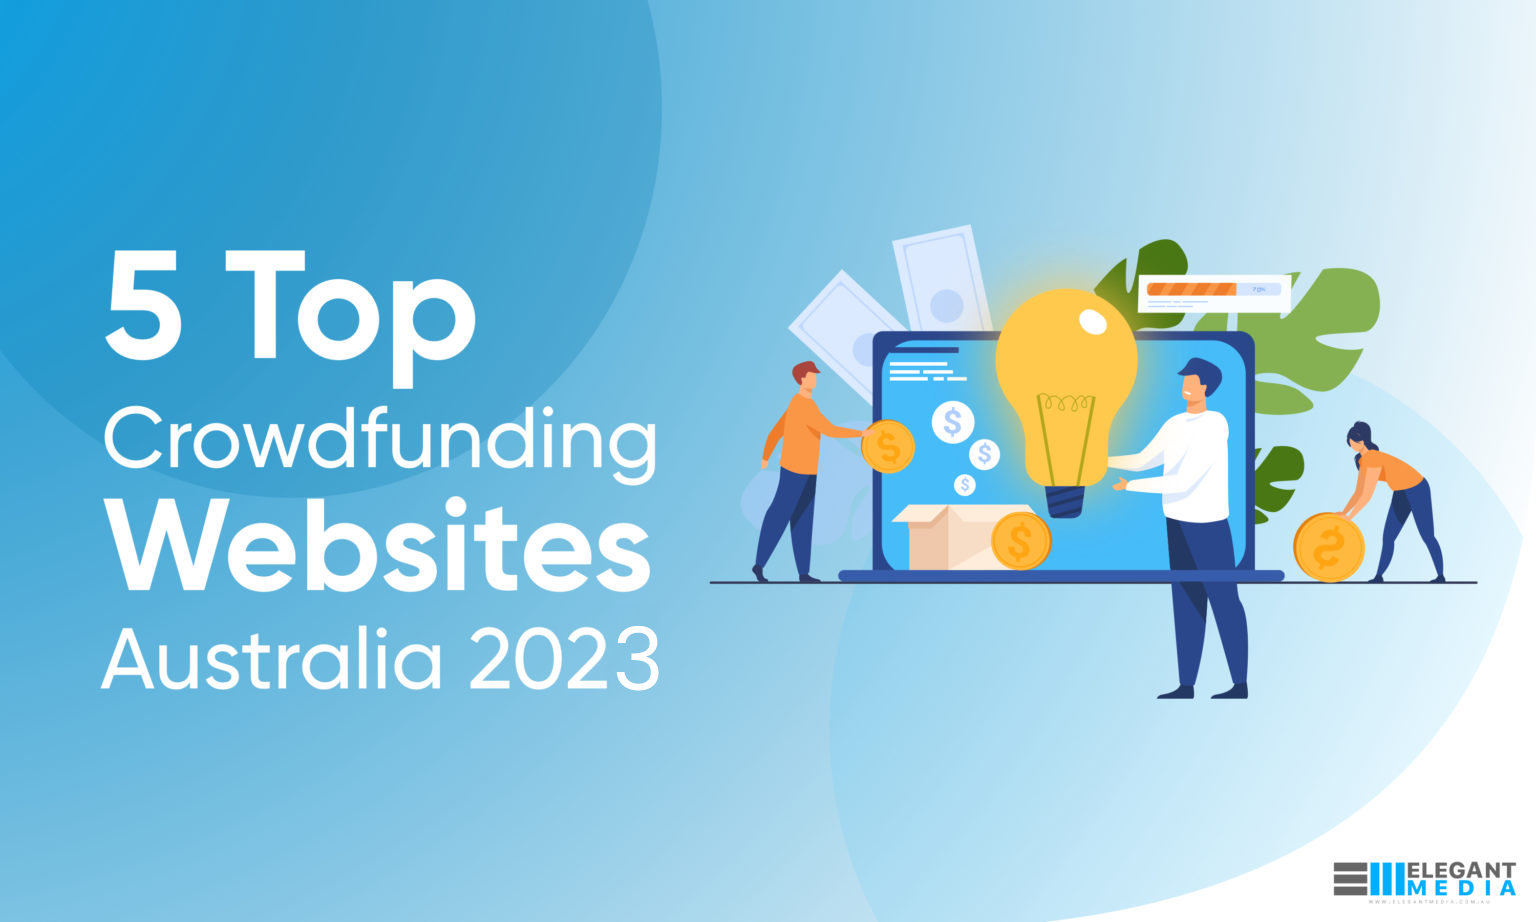 5 Top Crowdfunding Websites Australia